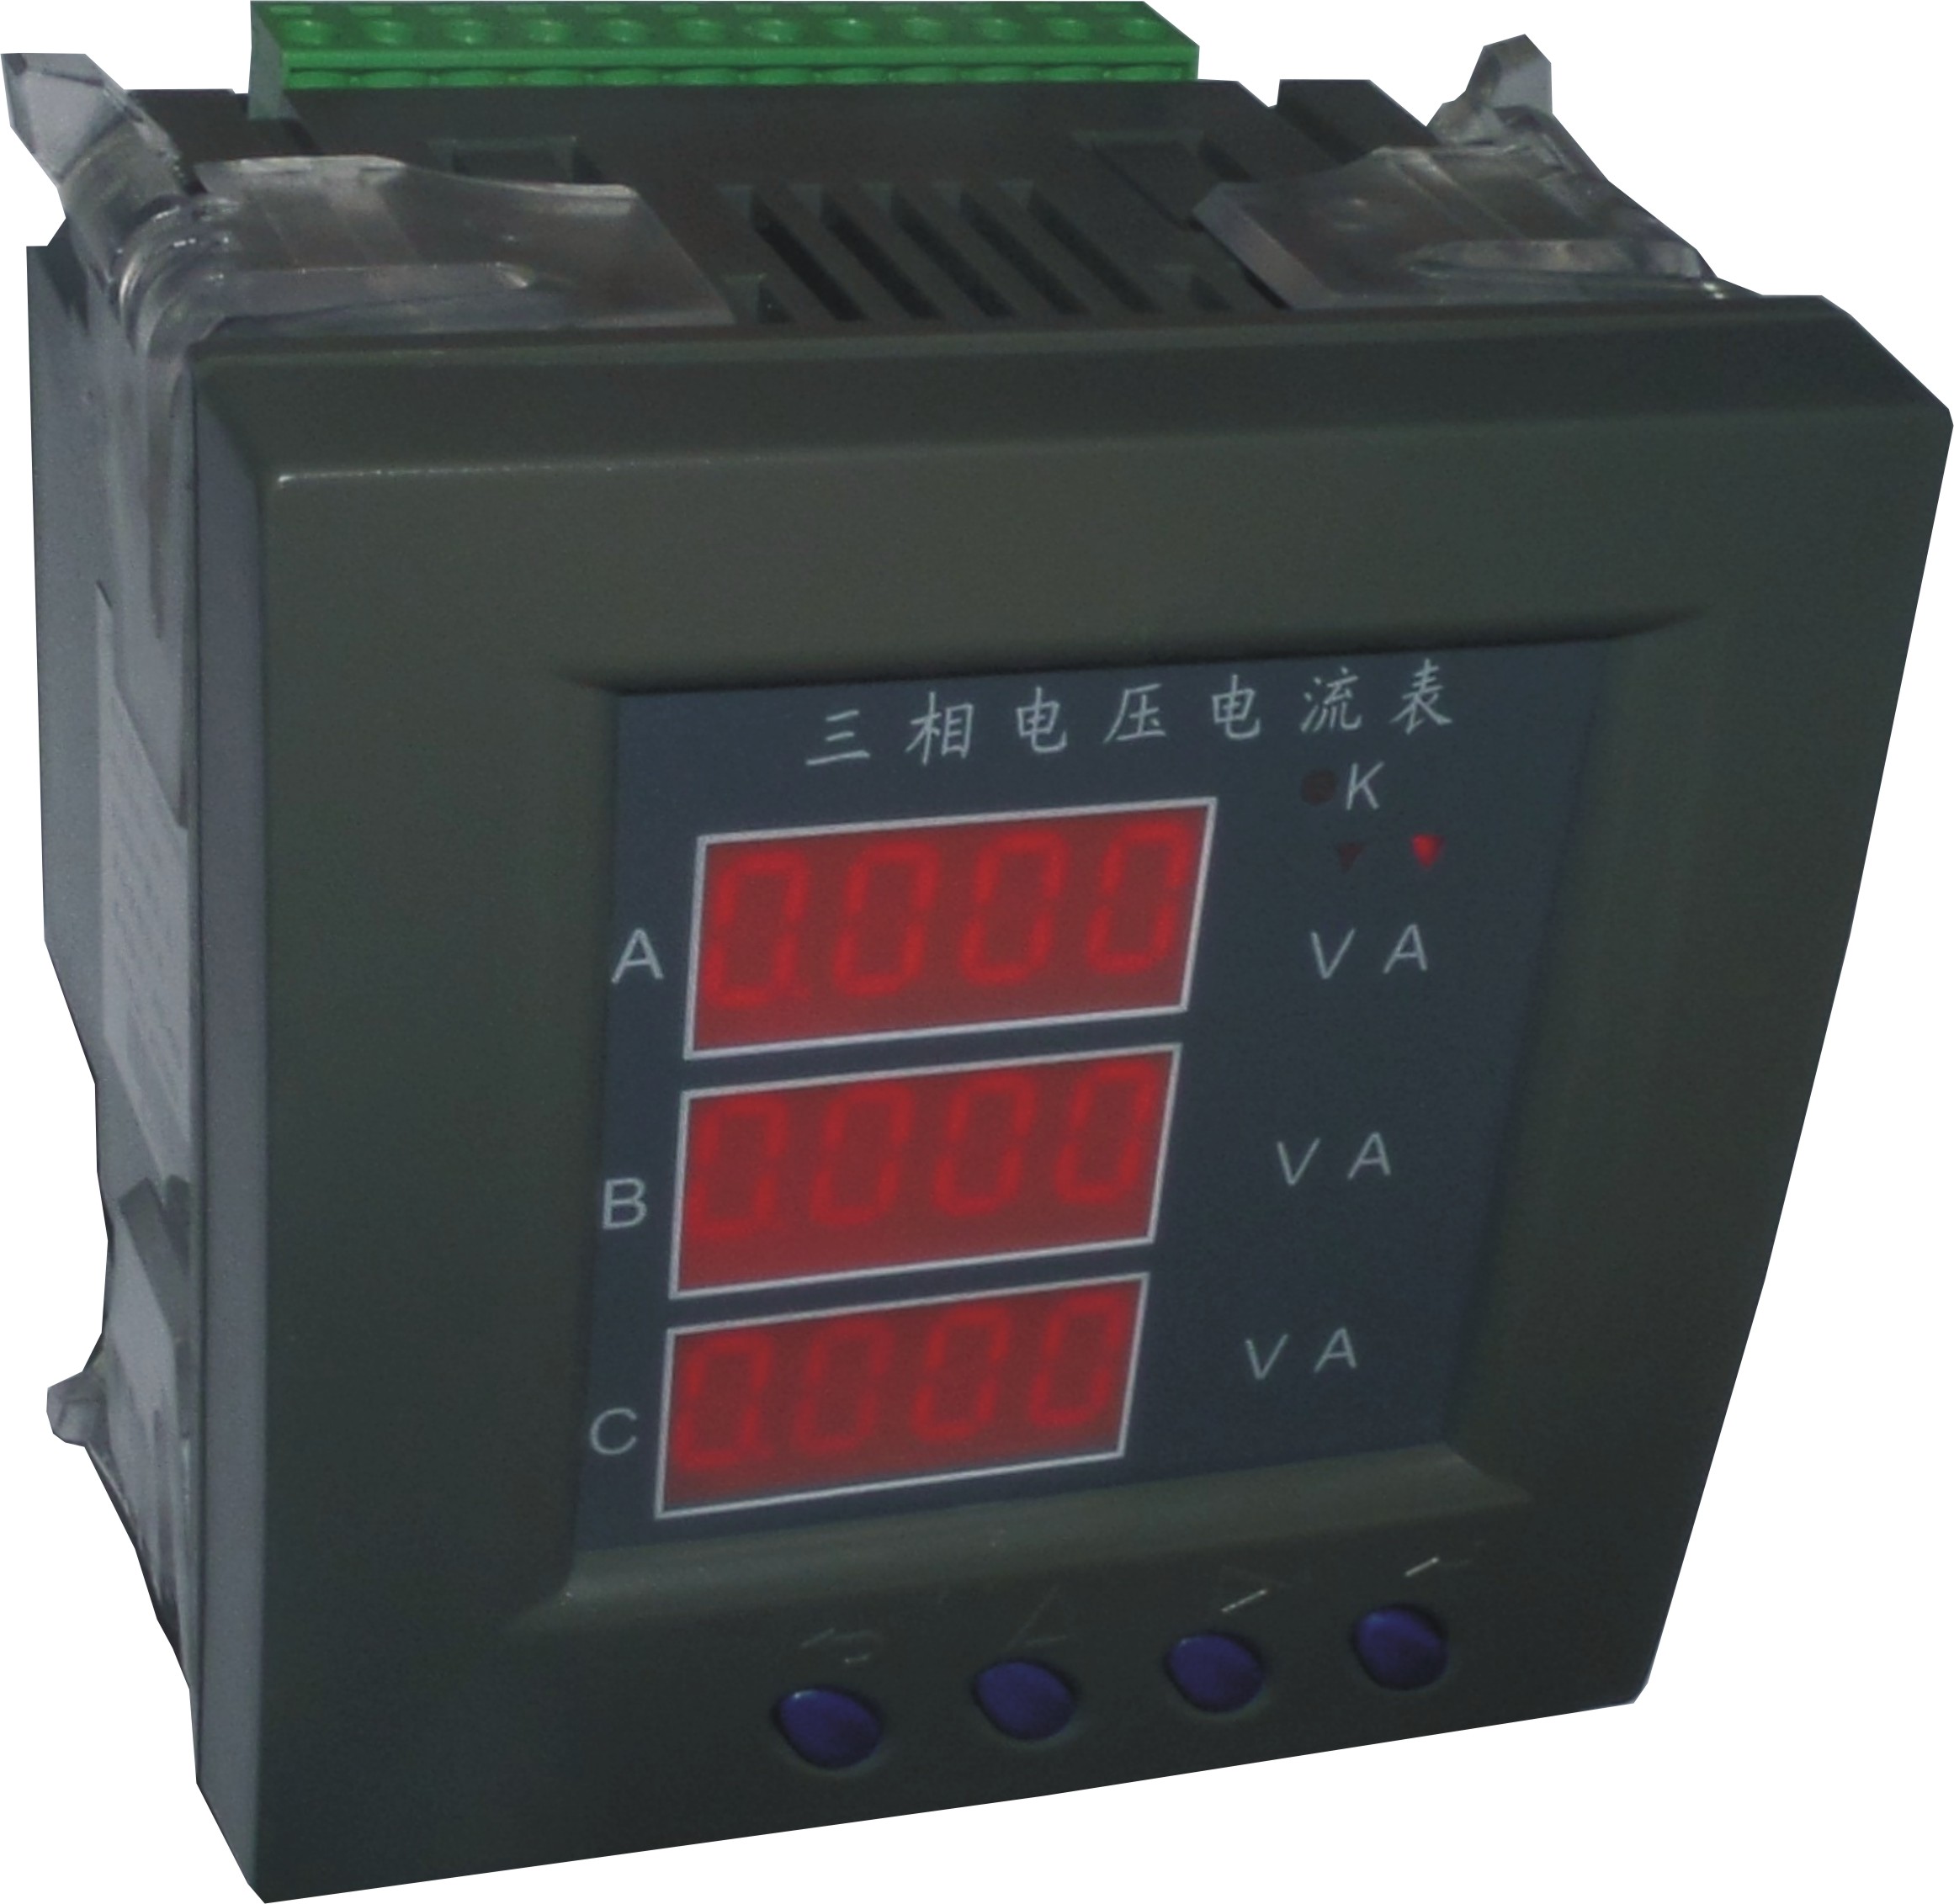 HC-63E-3 三相电压电流表使用说明书